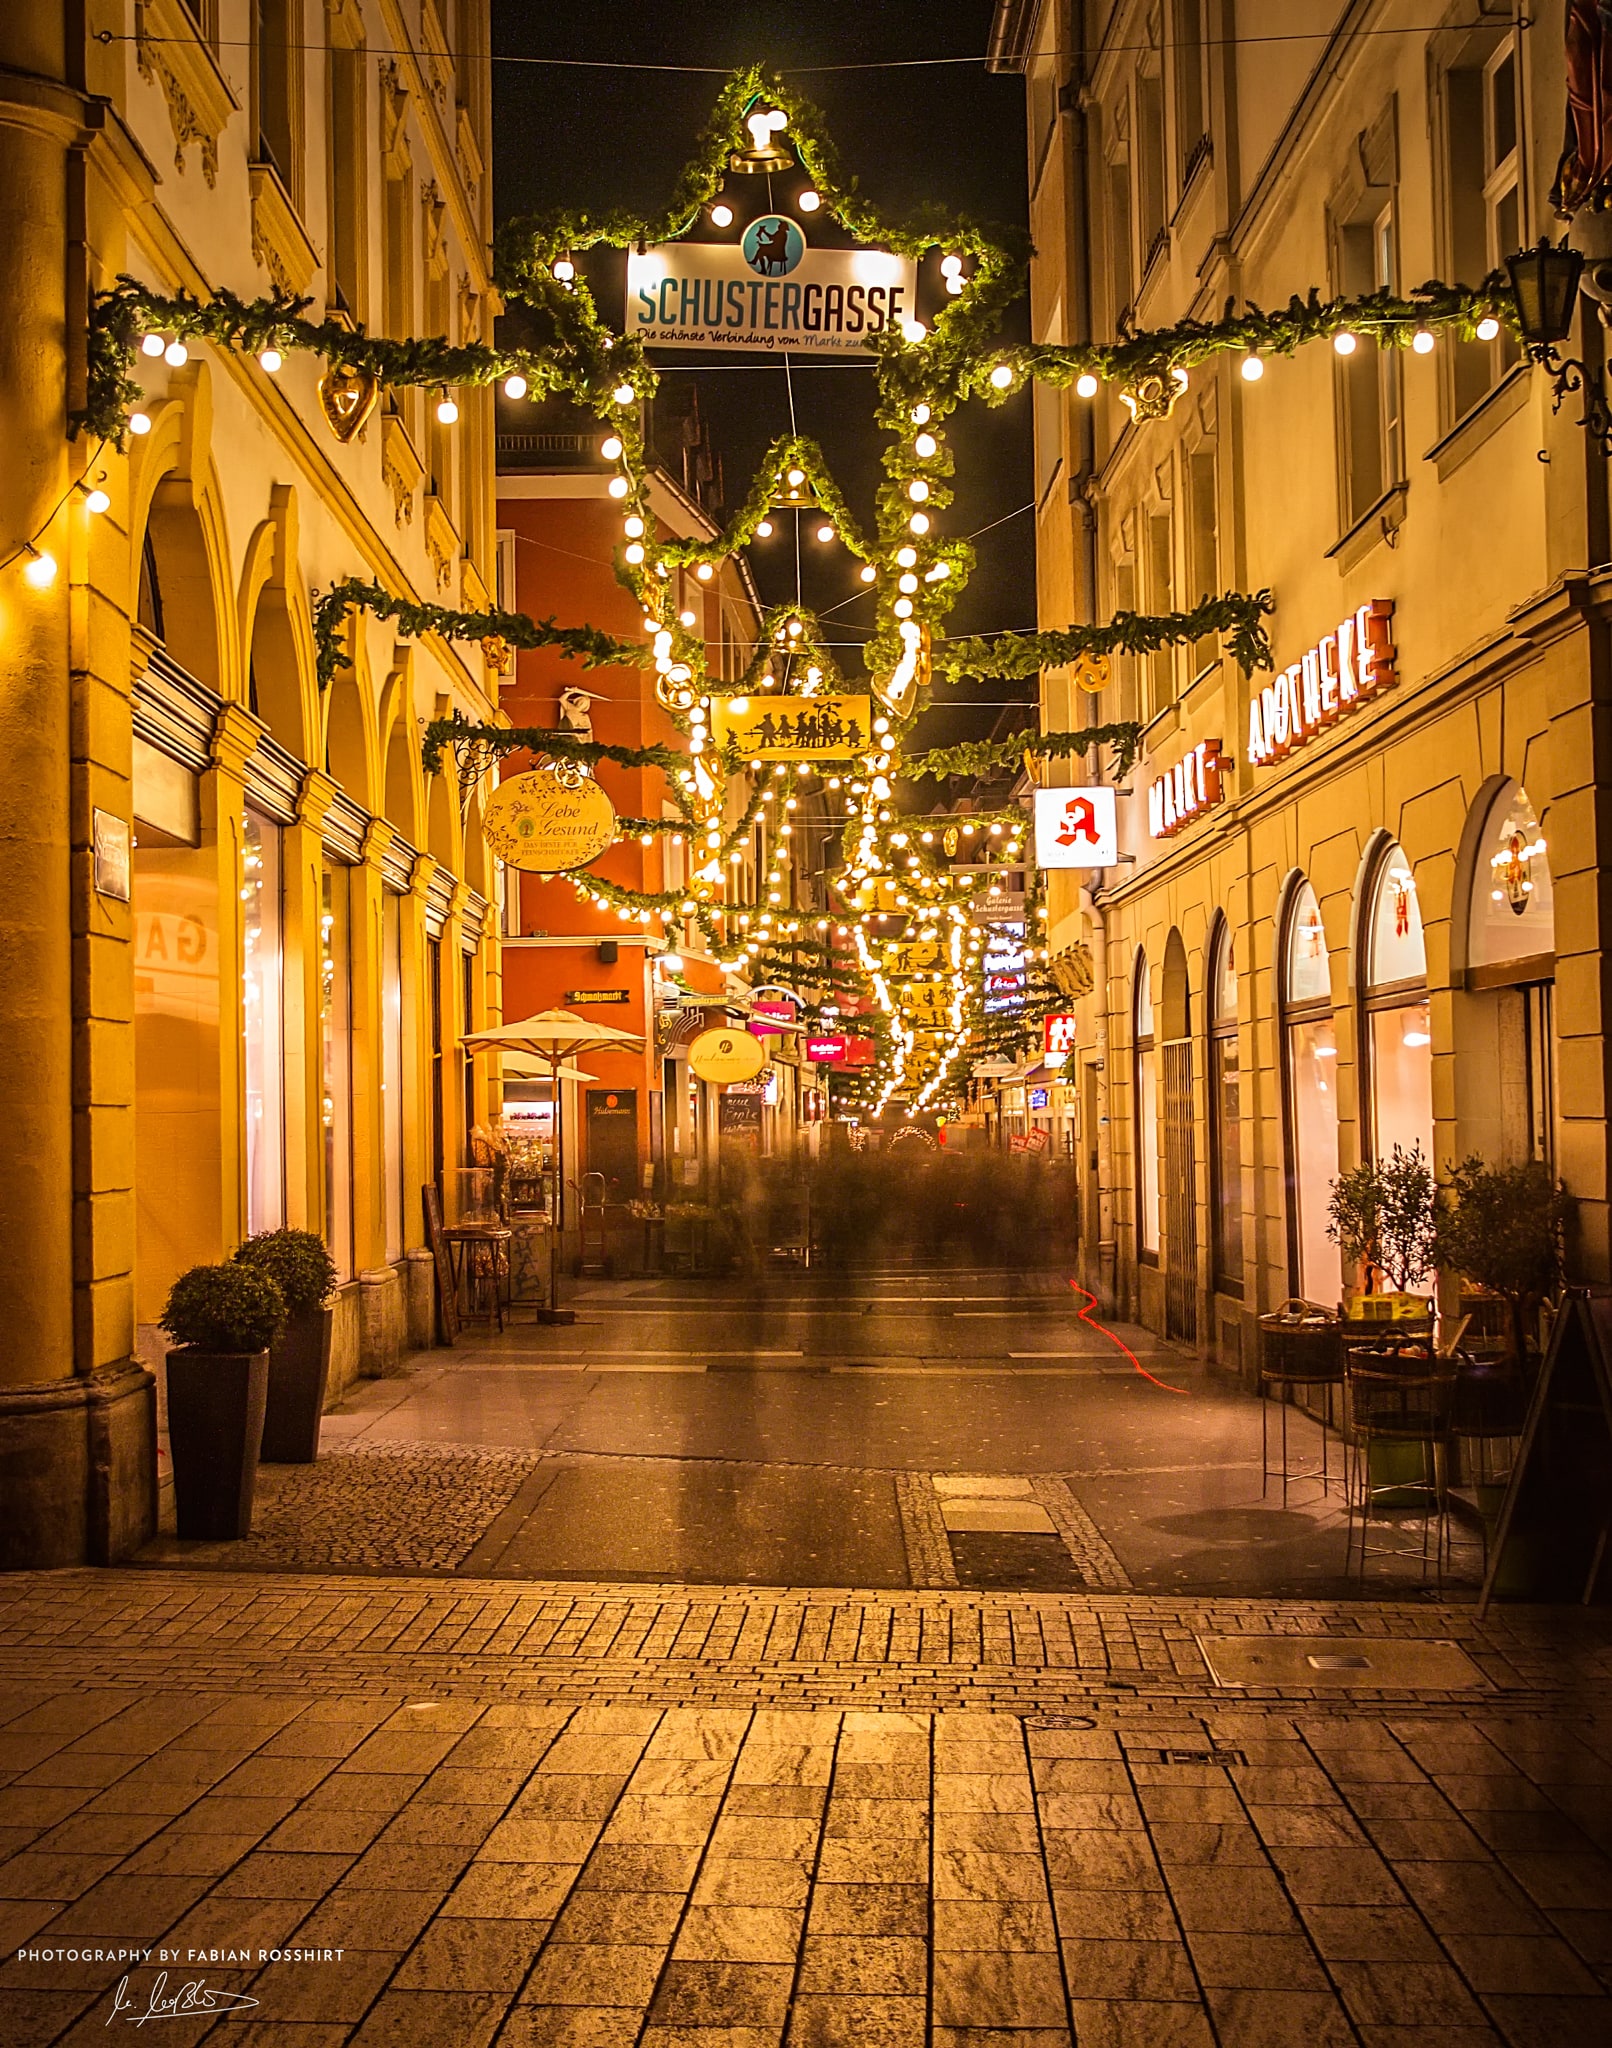 Schustergasse, Lichter, Weihnachten, Weihnachtsmarkt, Beleuchtet, Gold (Würzburg Wallpaper HD Wandbild Wandbilder Hintergrundbild Background)